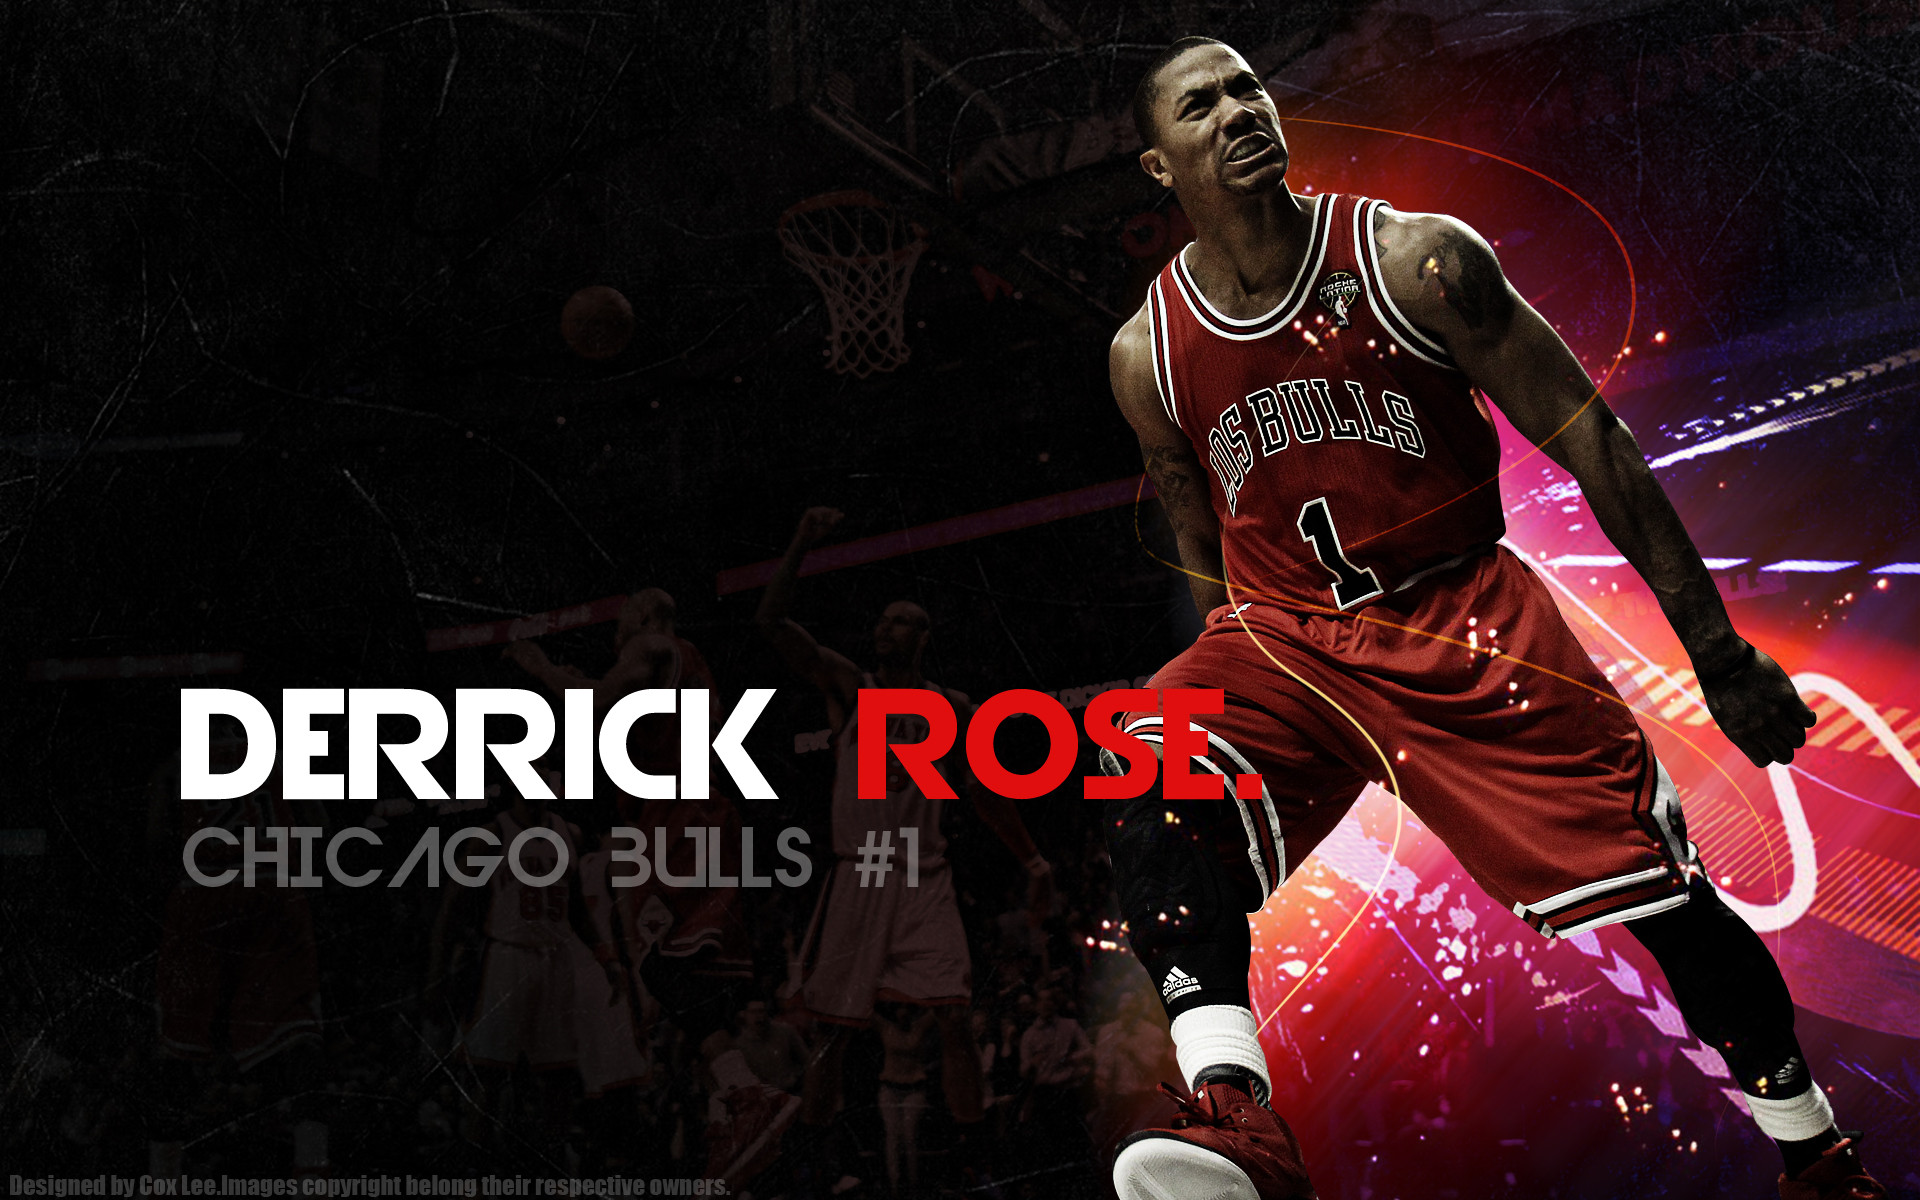 derrick rose wallpaper hd,basketball player,basketball,basketball moves,ball game,football player